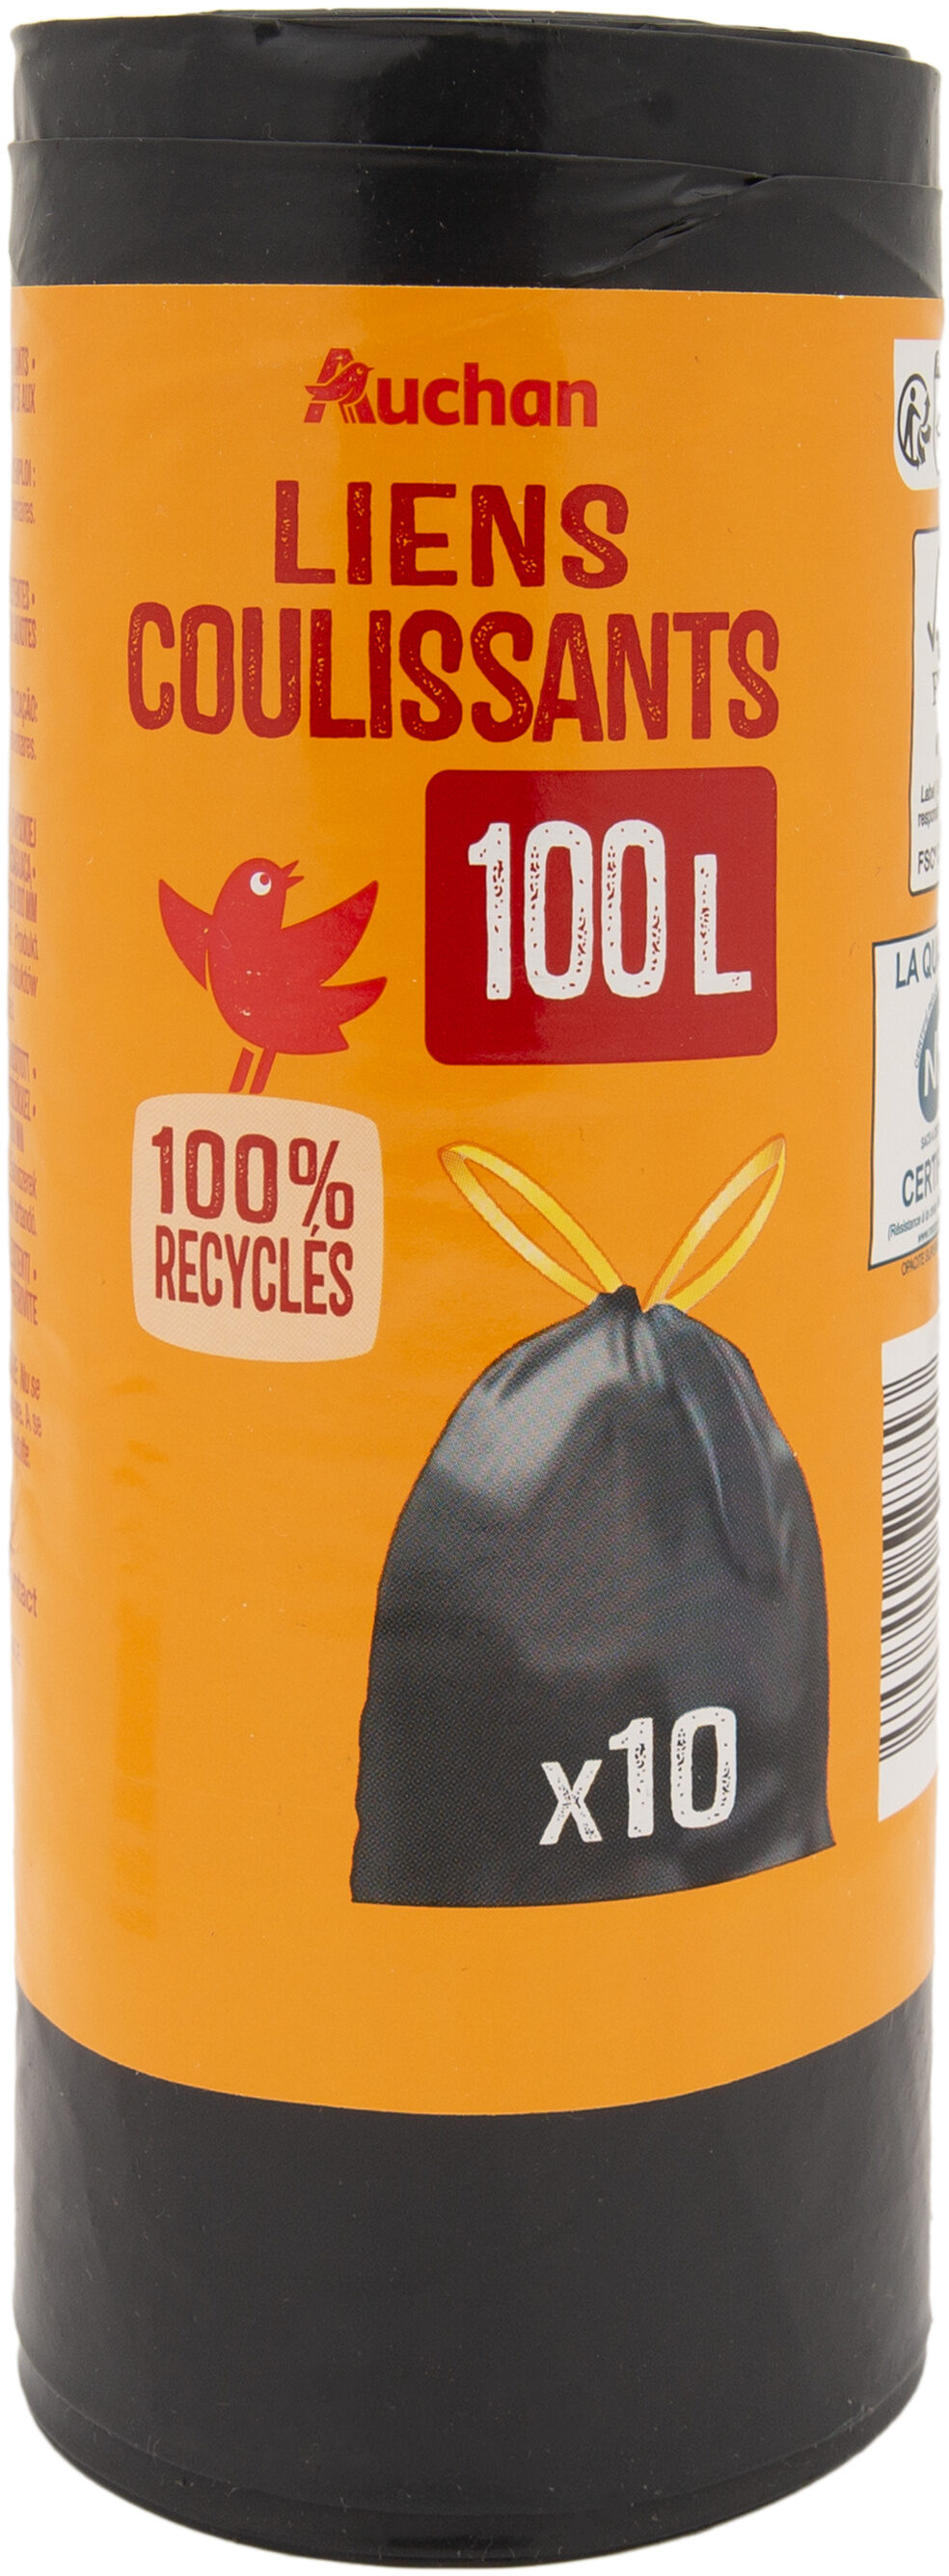 Auchan sacs poubelles liens coulissants 100l 10pcs - Produit - fr